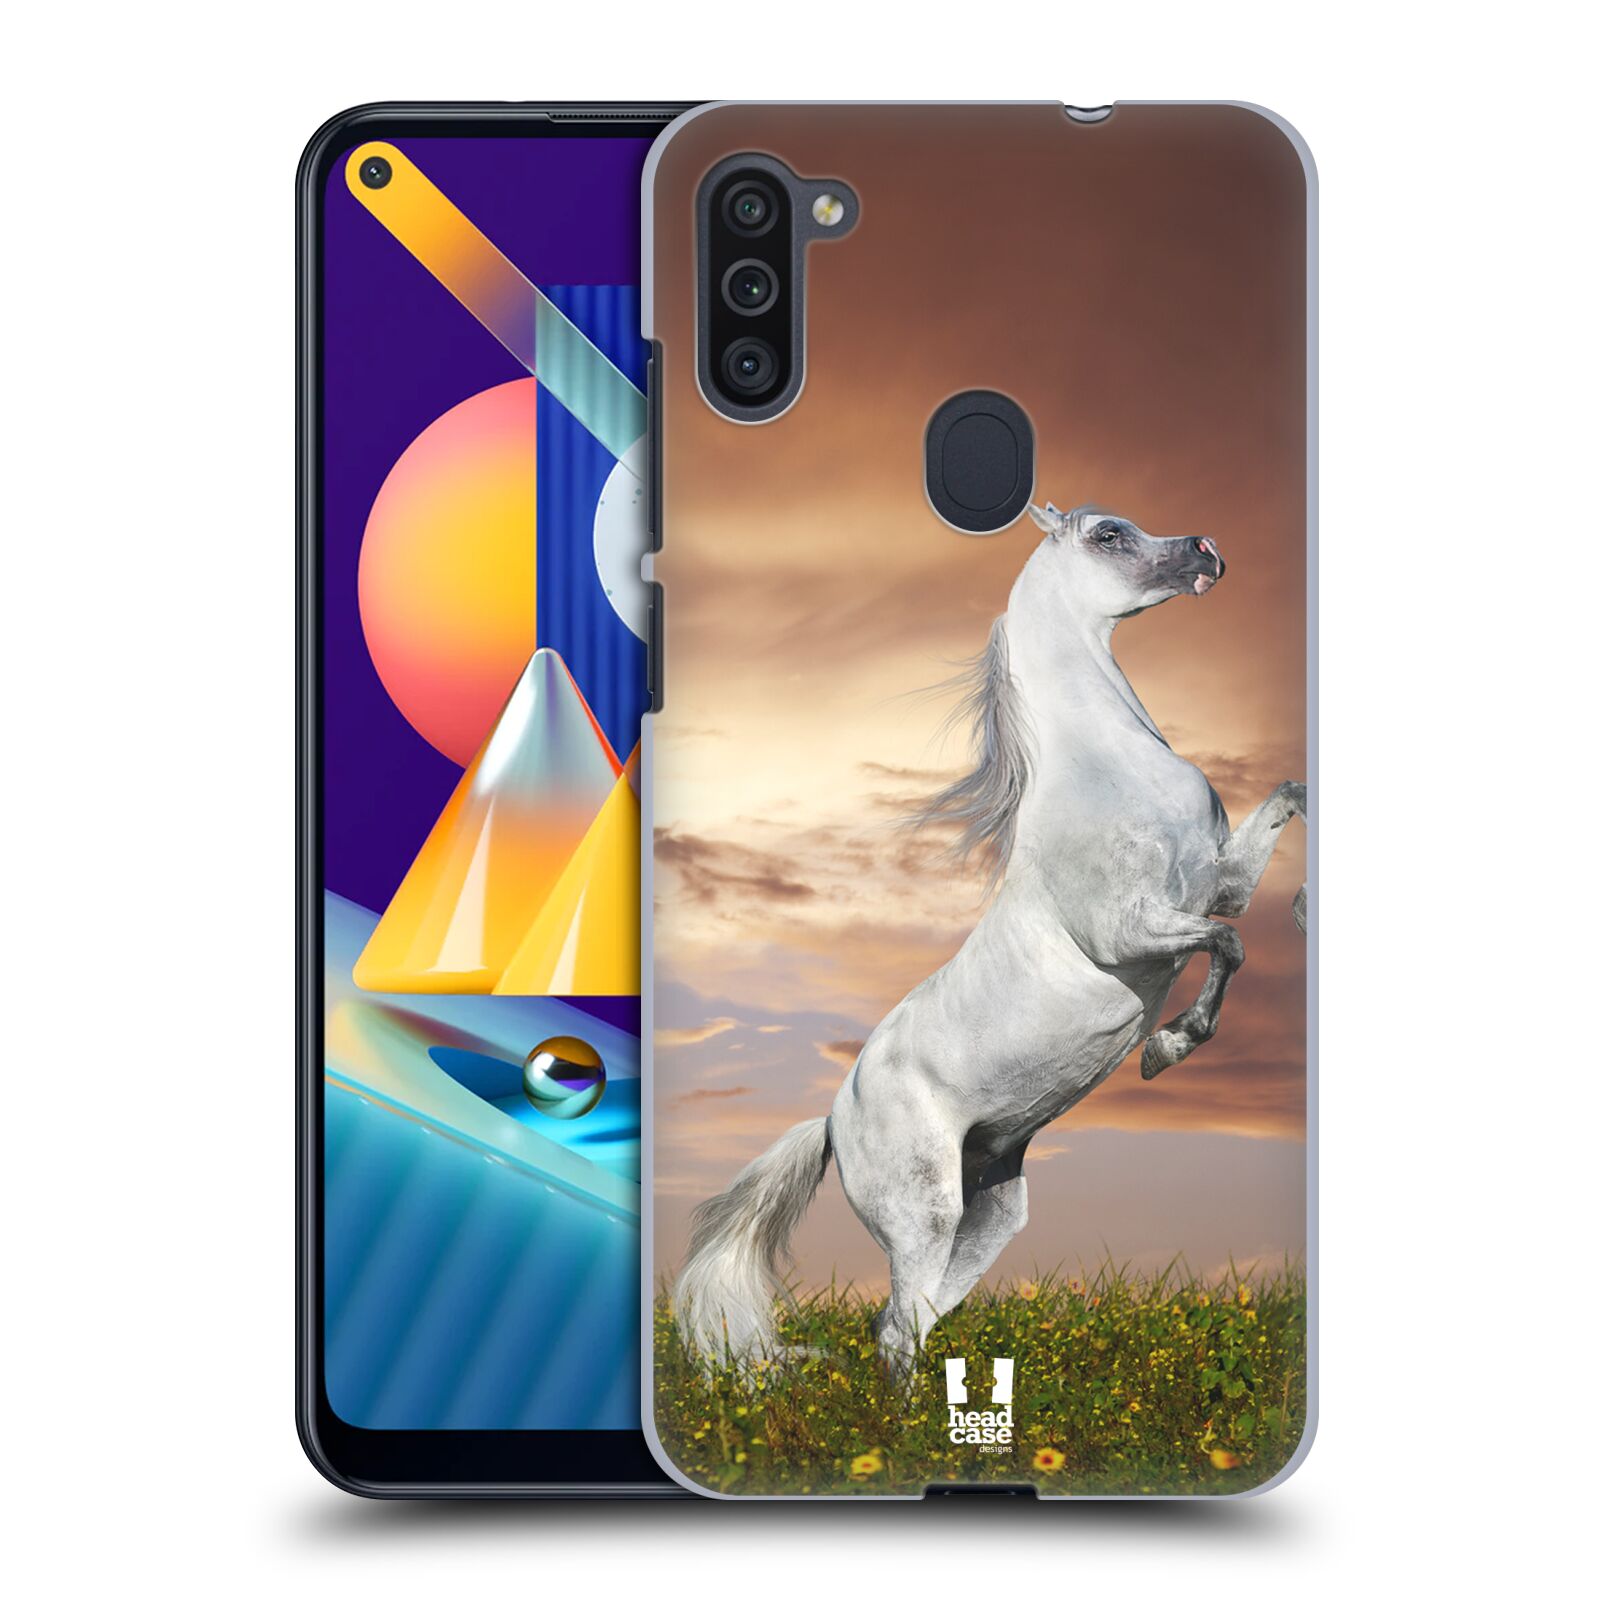 Zadní obal pro mobil Samsung Galaxy M11 - HEAD CASE - Svět zvířat divoký kůň